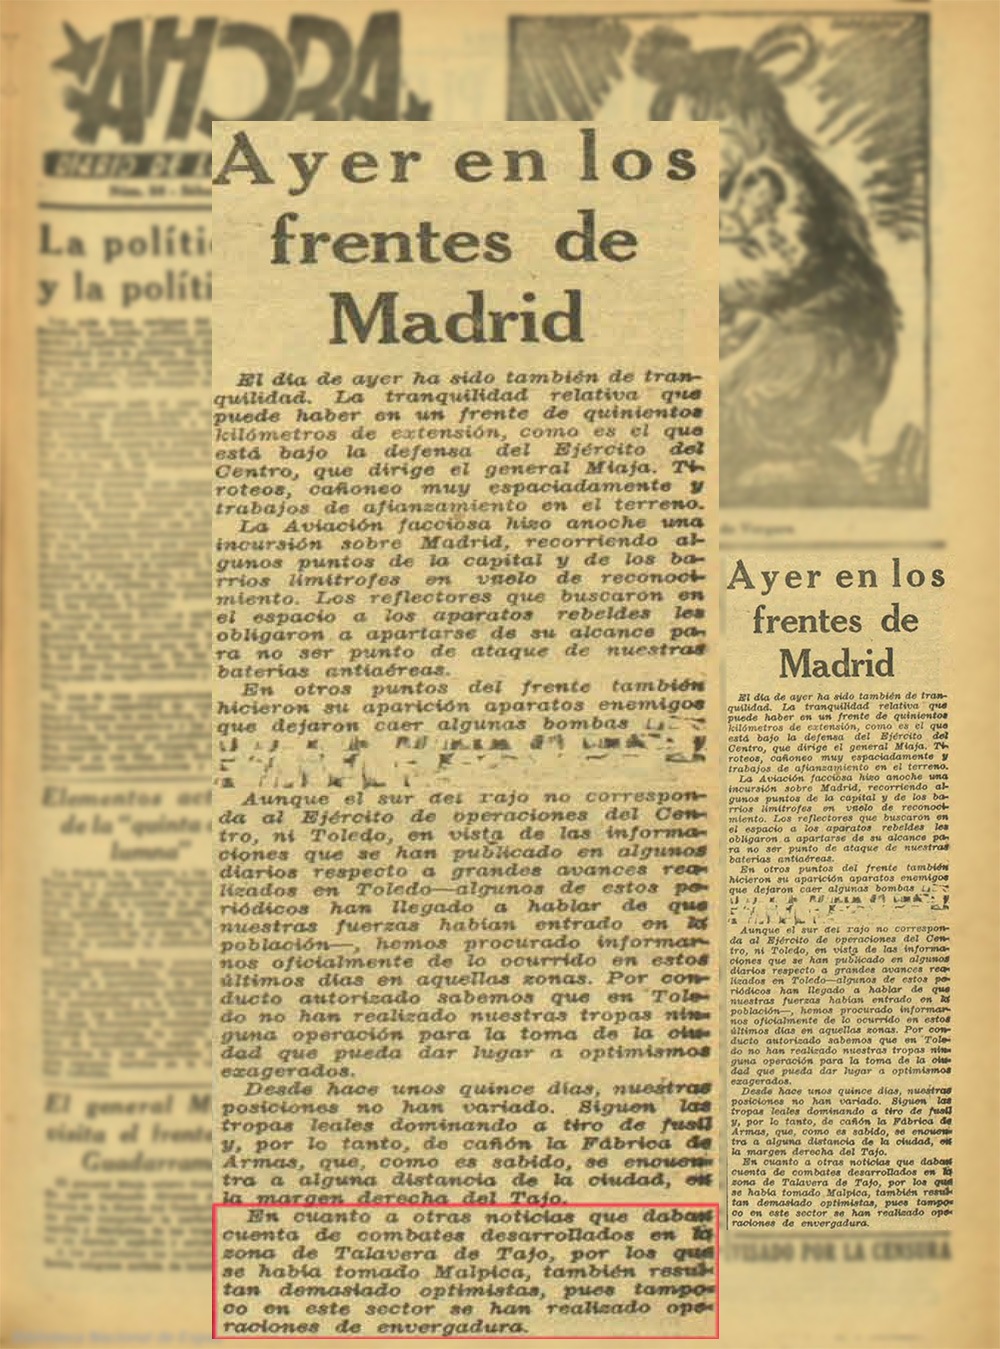 Ayer en los frentes de Madrid- AHORA, (6/03/37)